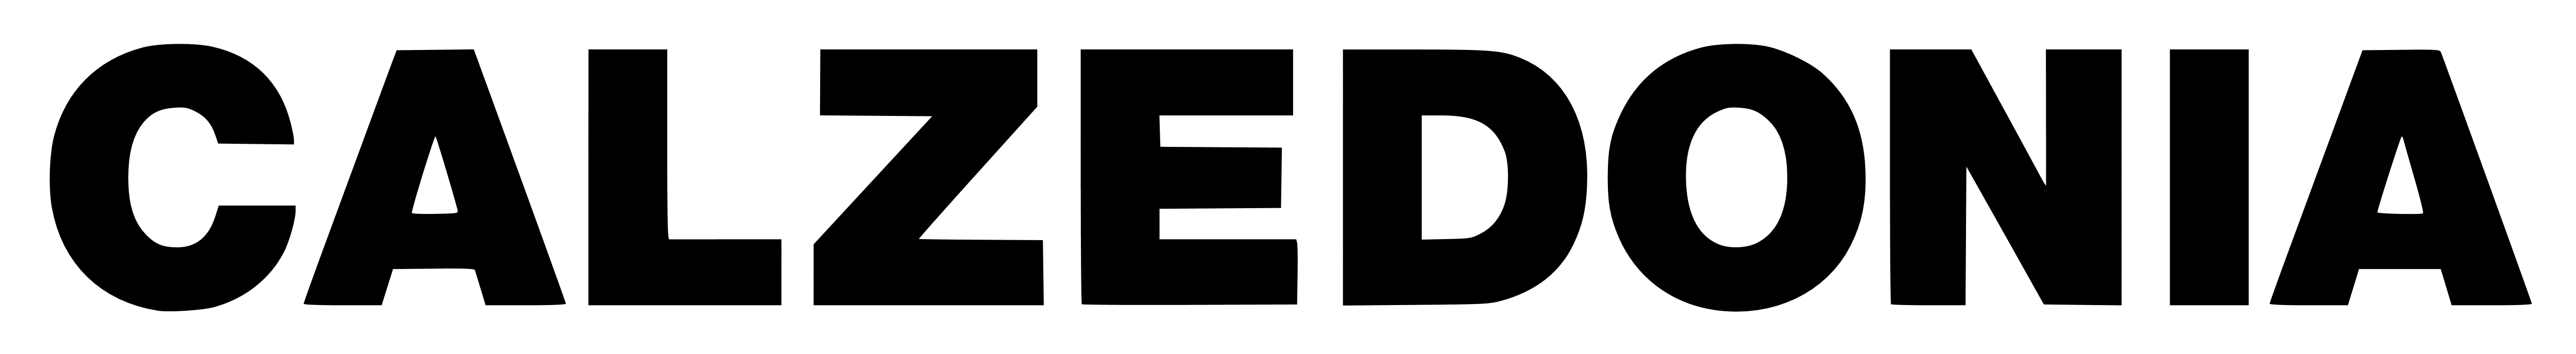 Calzedonia logo, wordmark, logotype